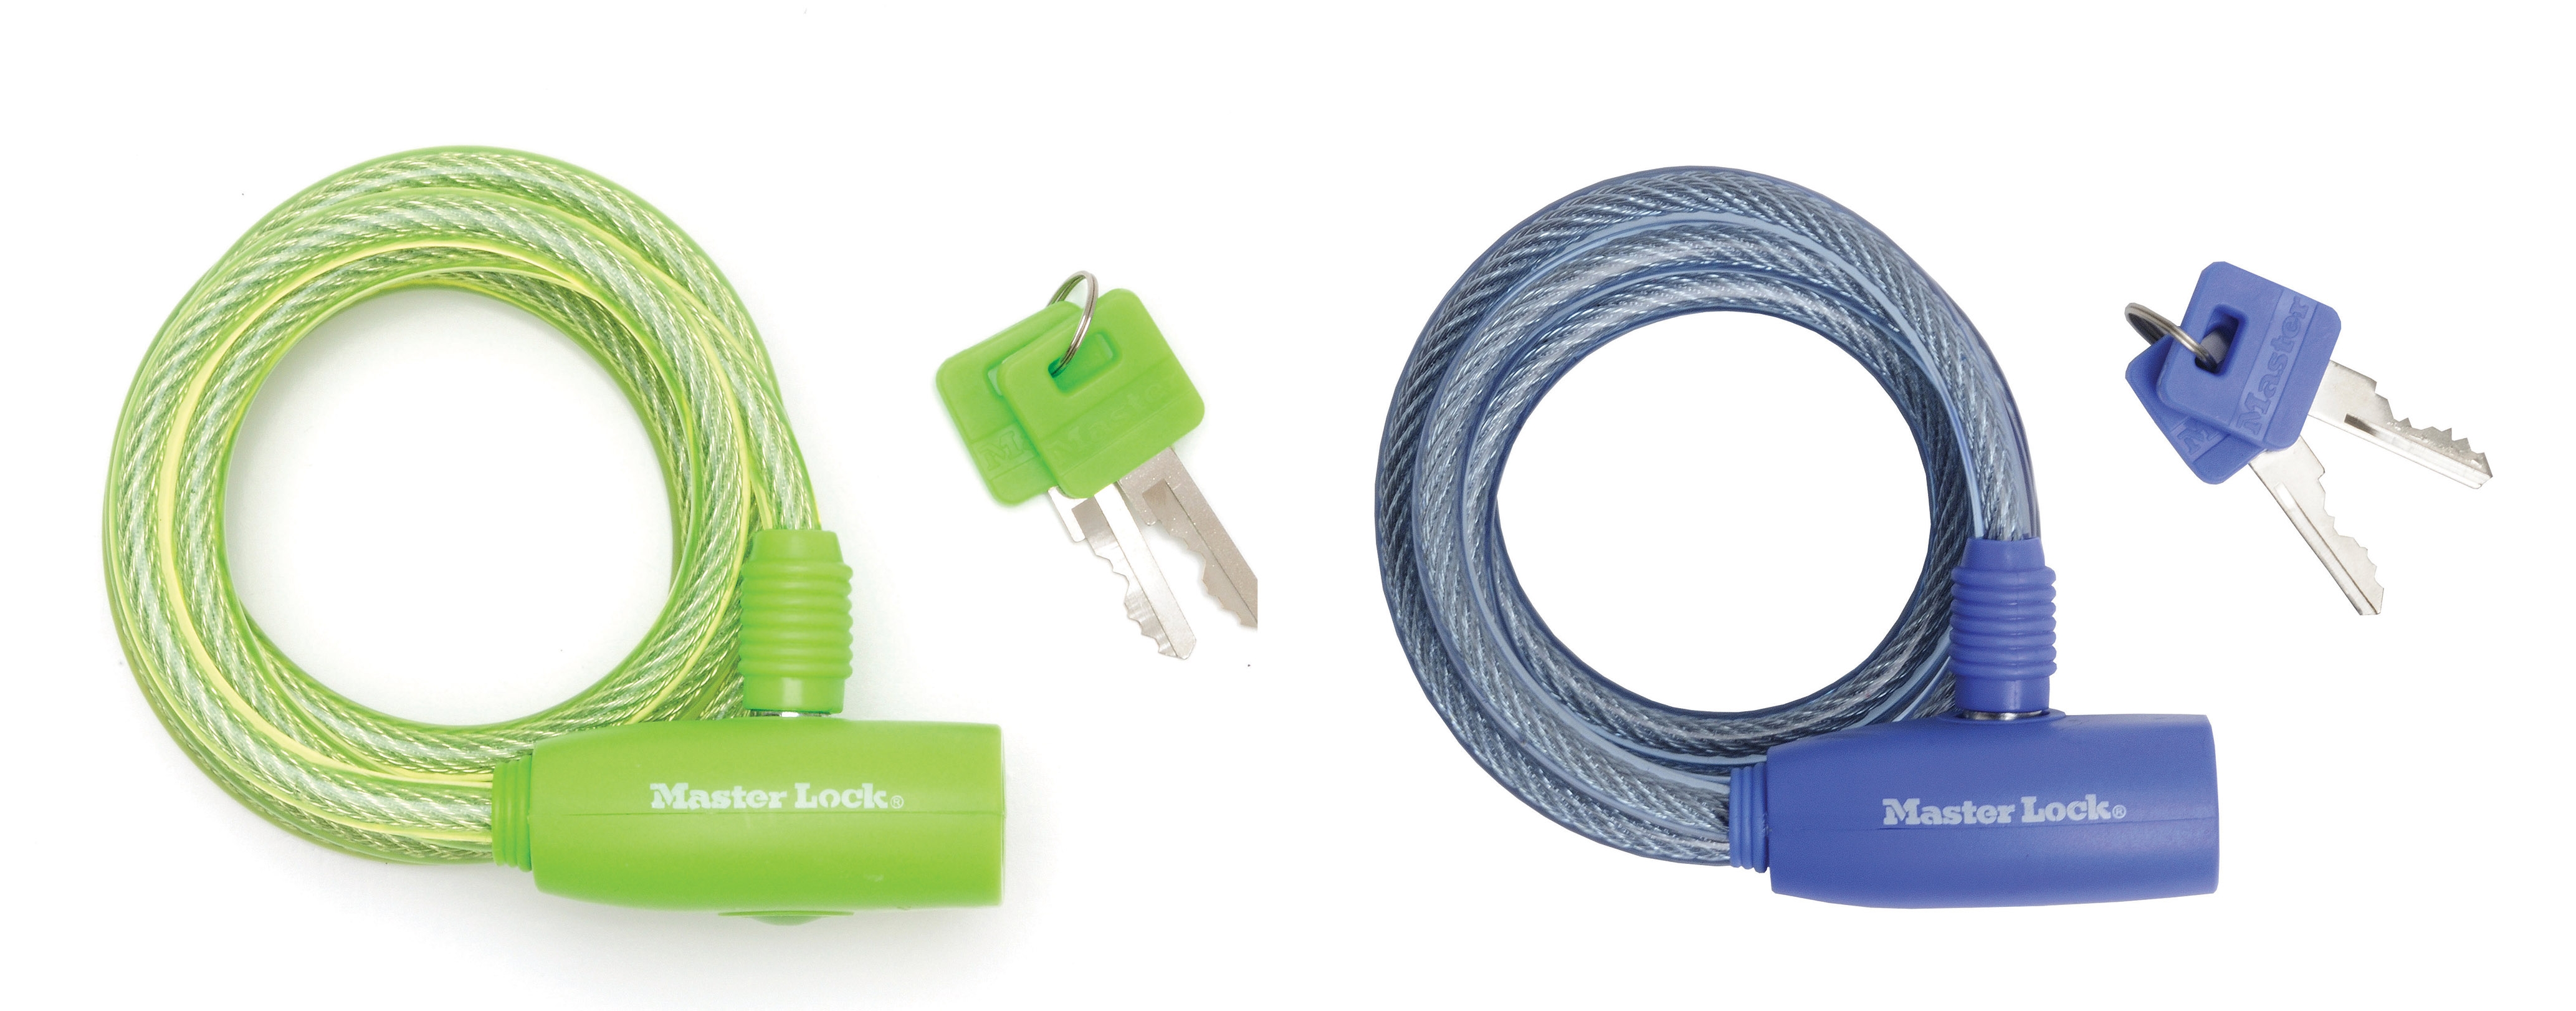 Antifurt Master Lock cablu spiralat cu cheie 1.80m x 8 mm – diverse culori 1.80m